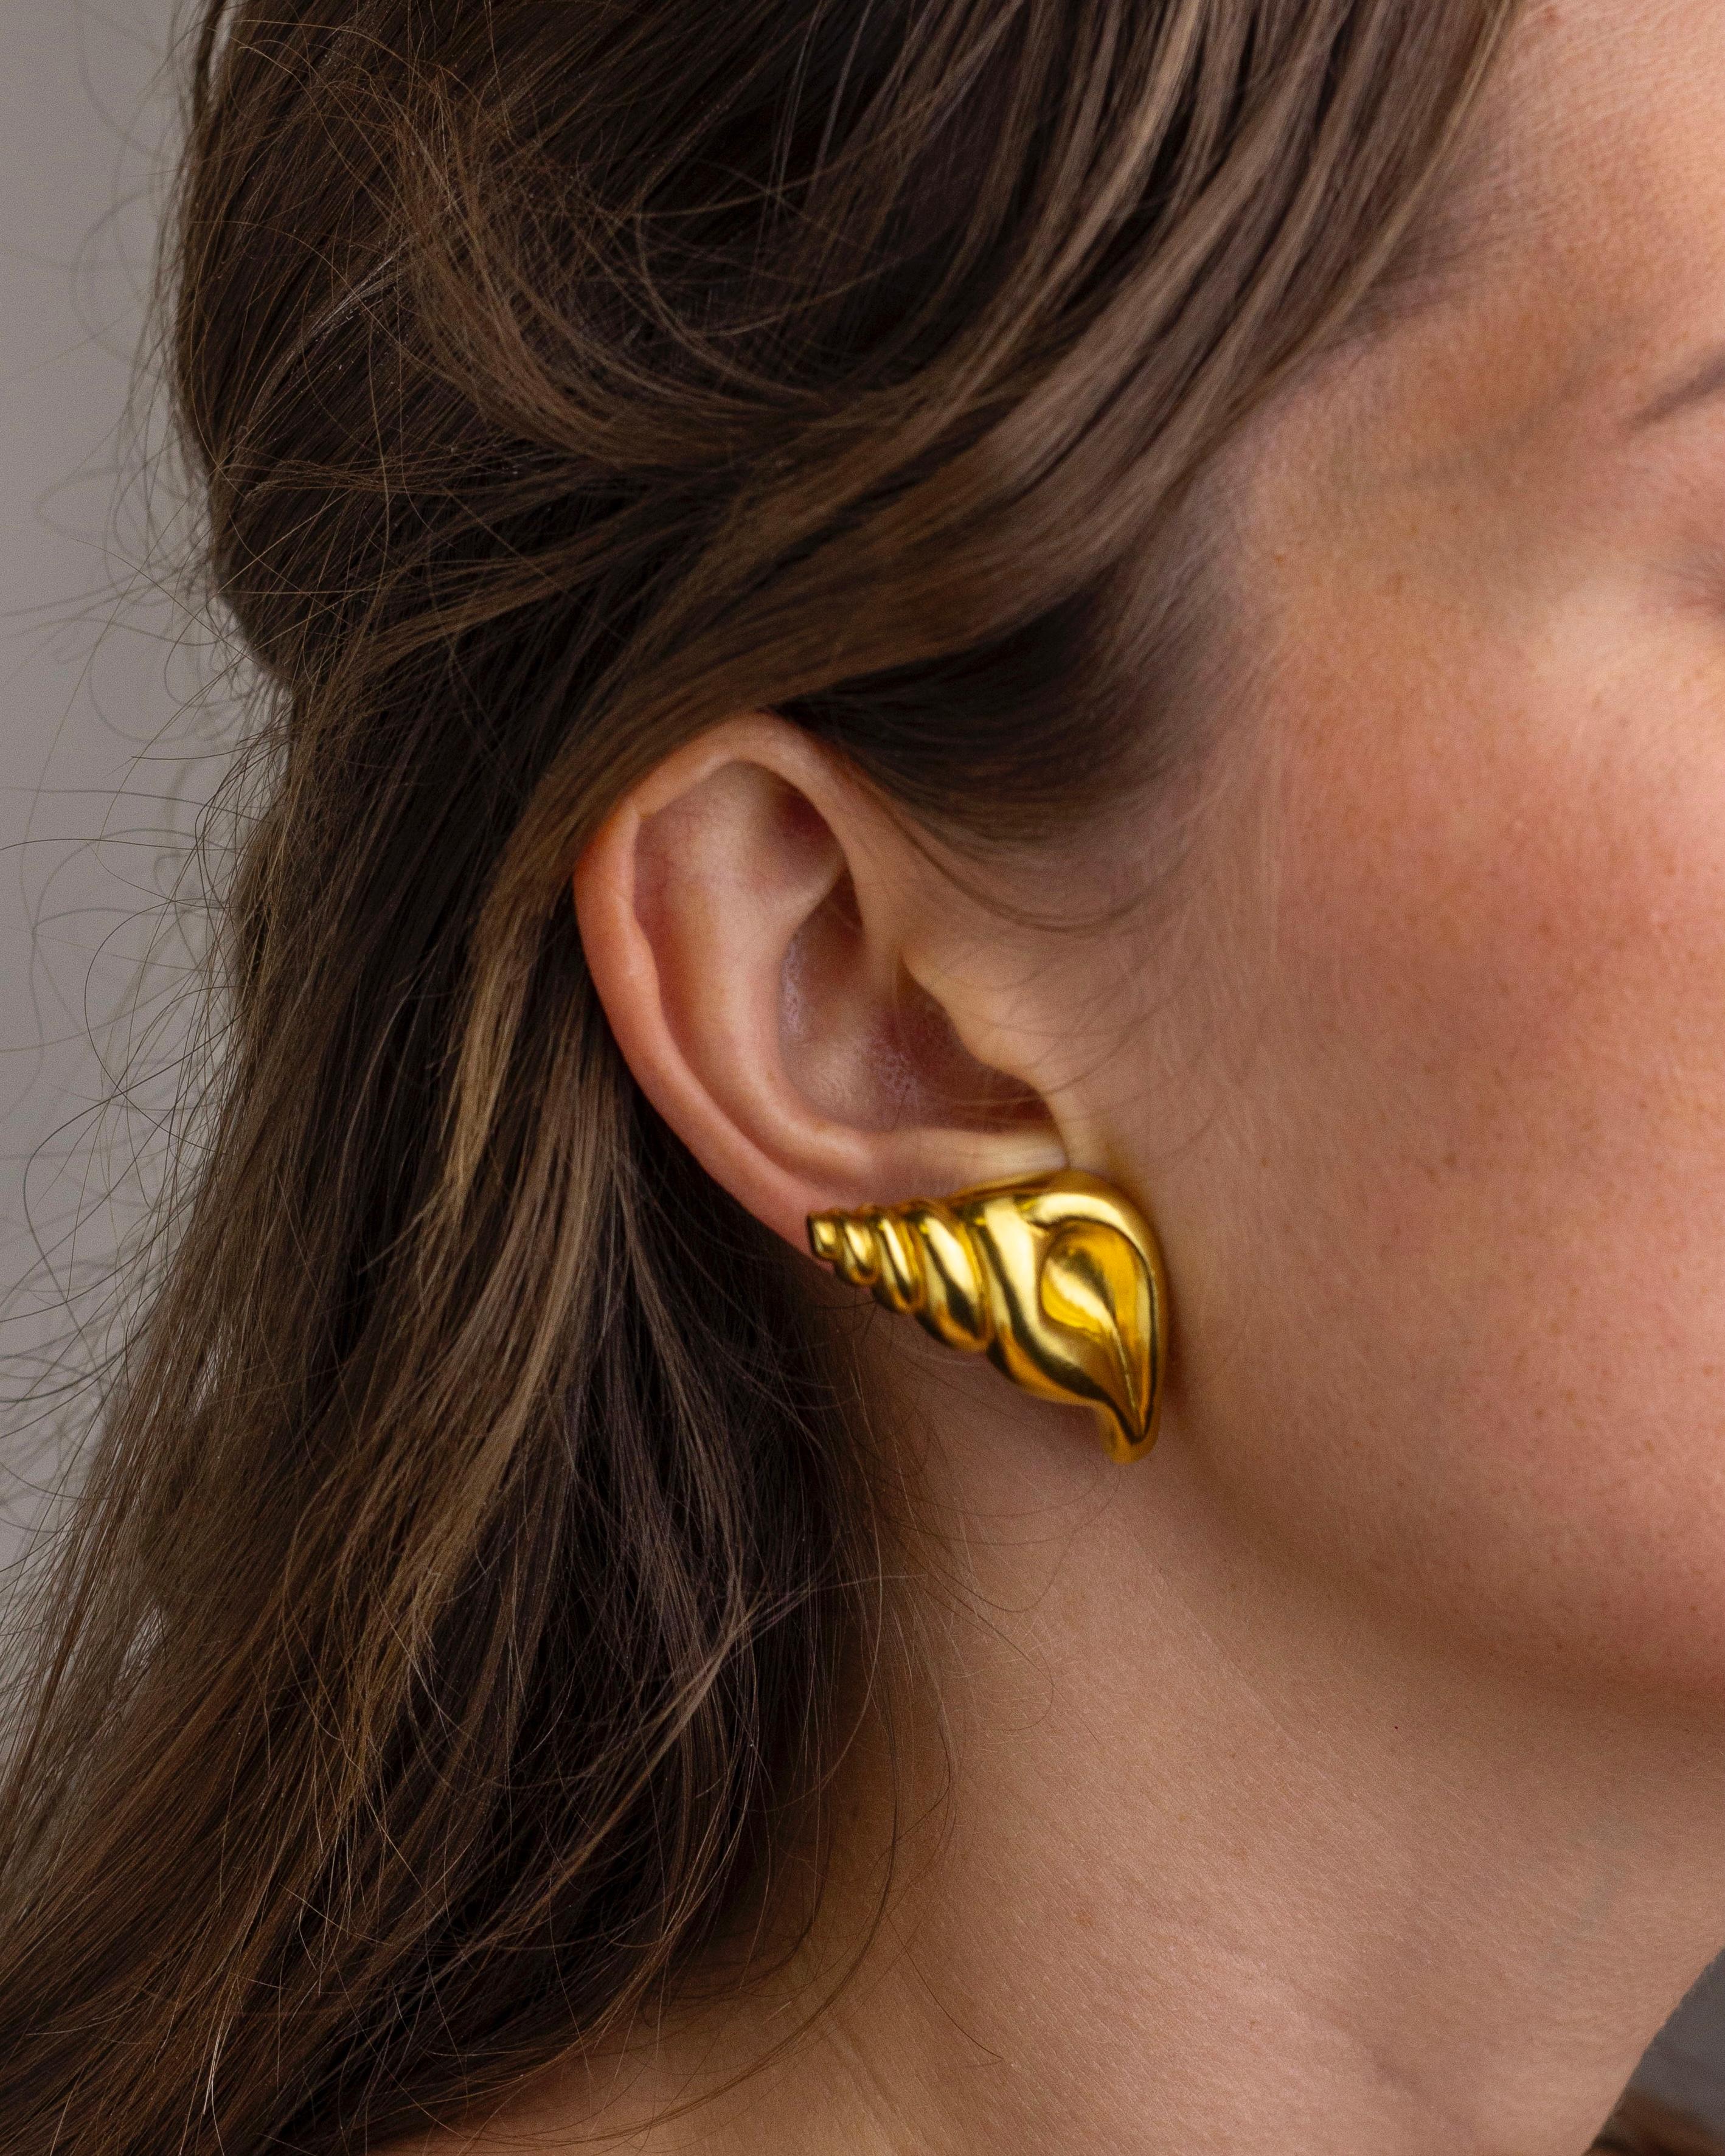 Cette exquise paire de clips d'oreille en or fin a été fabriquée par le joaillier grec Ilias Lalaounis dans les années 1970. Les coquillages stylisés ont été fabriqués en or jaune 18 carats, y compris les attaches qui conservent tous les poinçons de